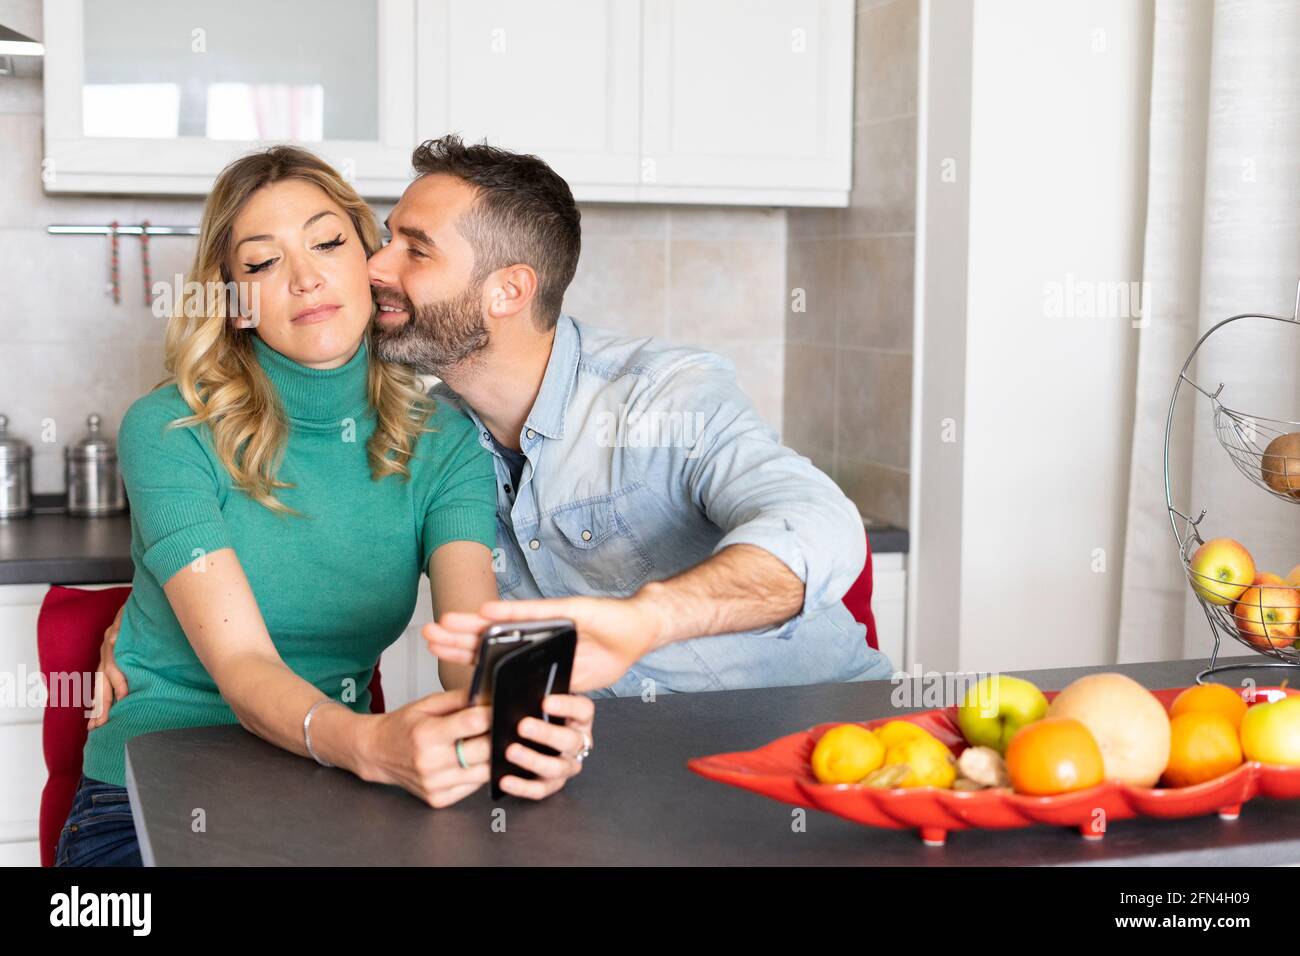 Il ragazzo copre la fotocamera del telefono della sua ragazza mentre la baciava. Scena divertente di una coppia newlywed. Dipendenza dallo smartphone e necessità di attenzione. Foto Stock